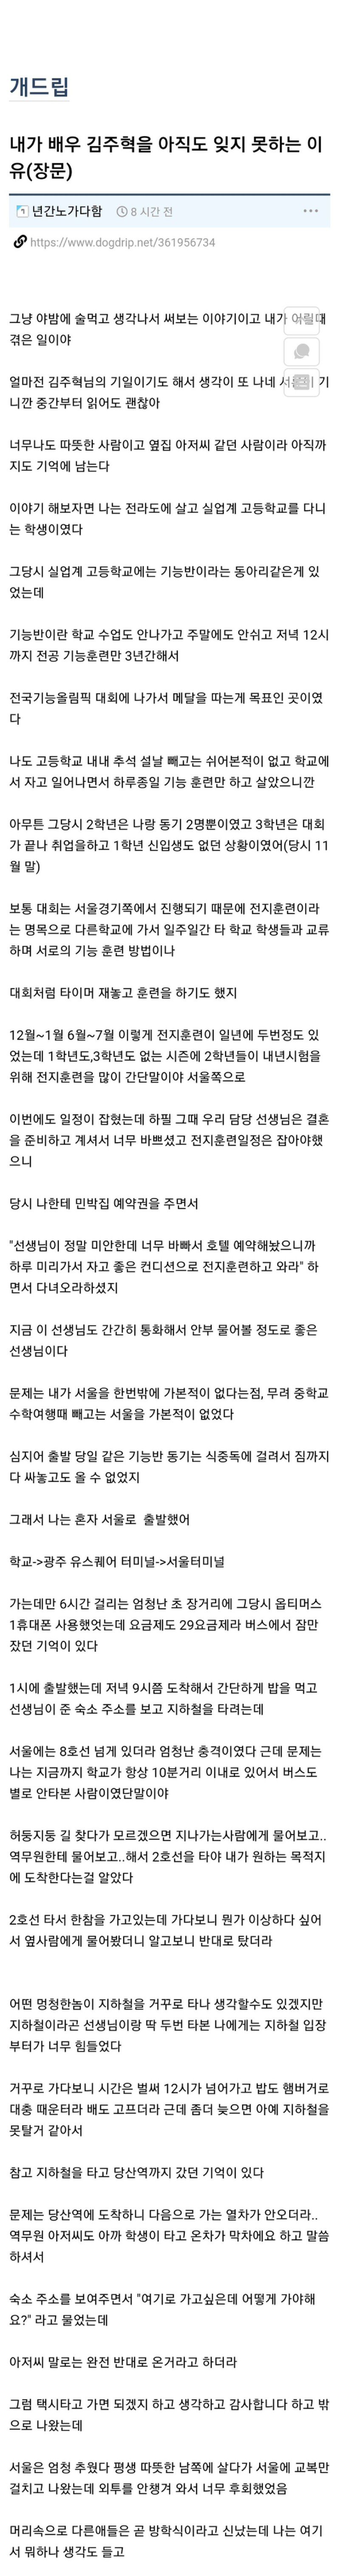 장문) 배우 김주혁을 아직도 잊지 못하는 이유